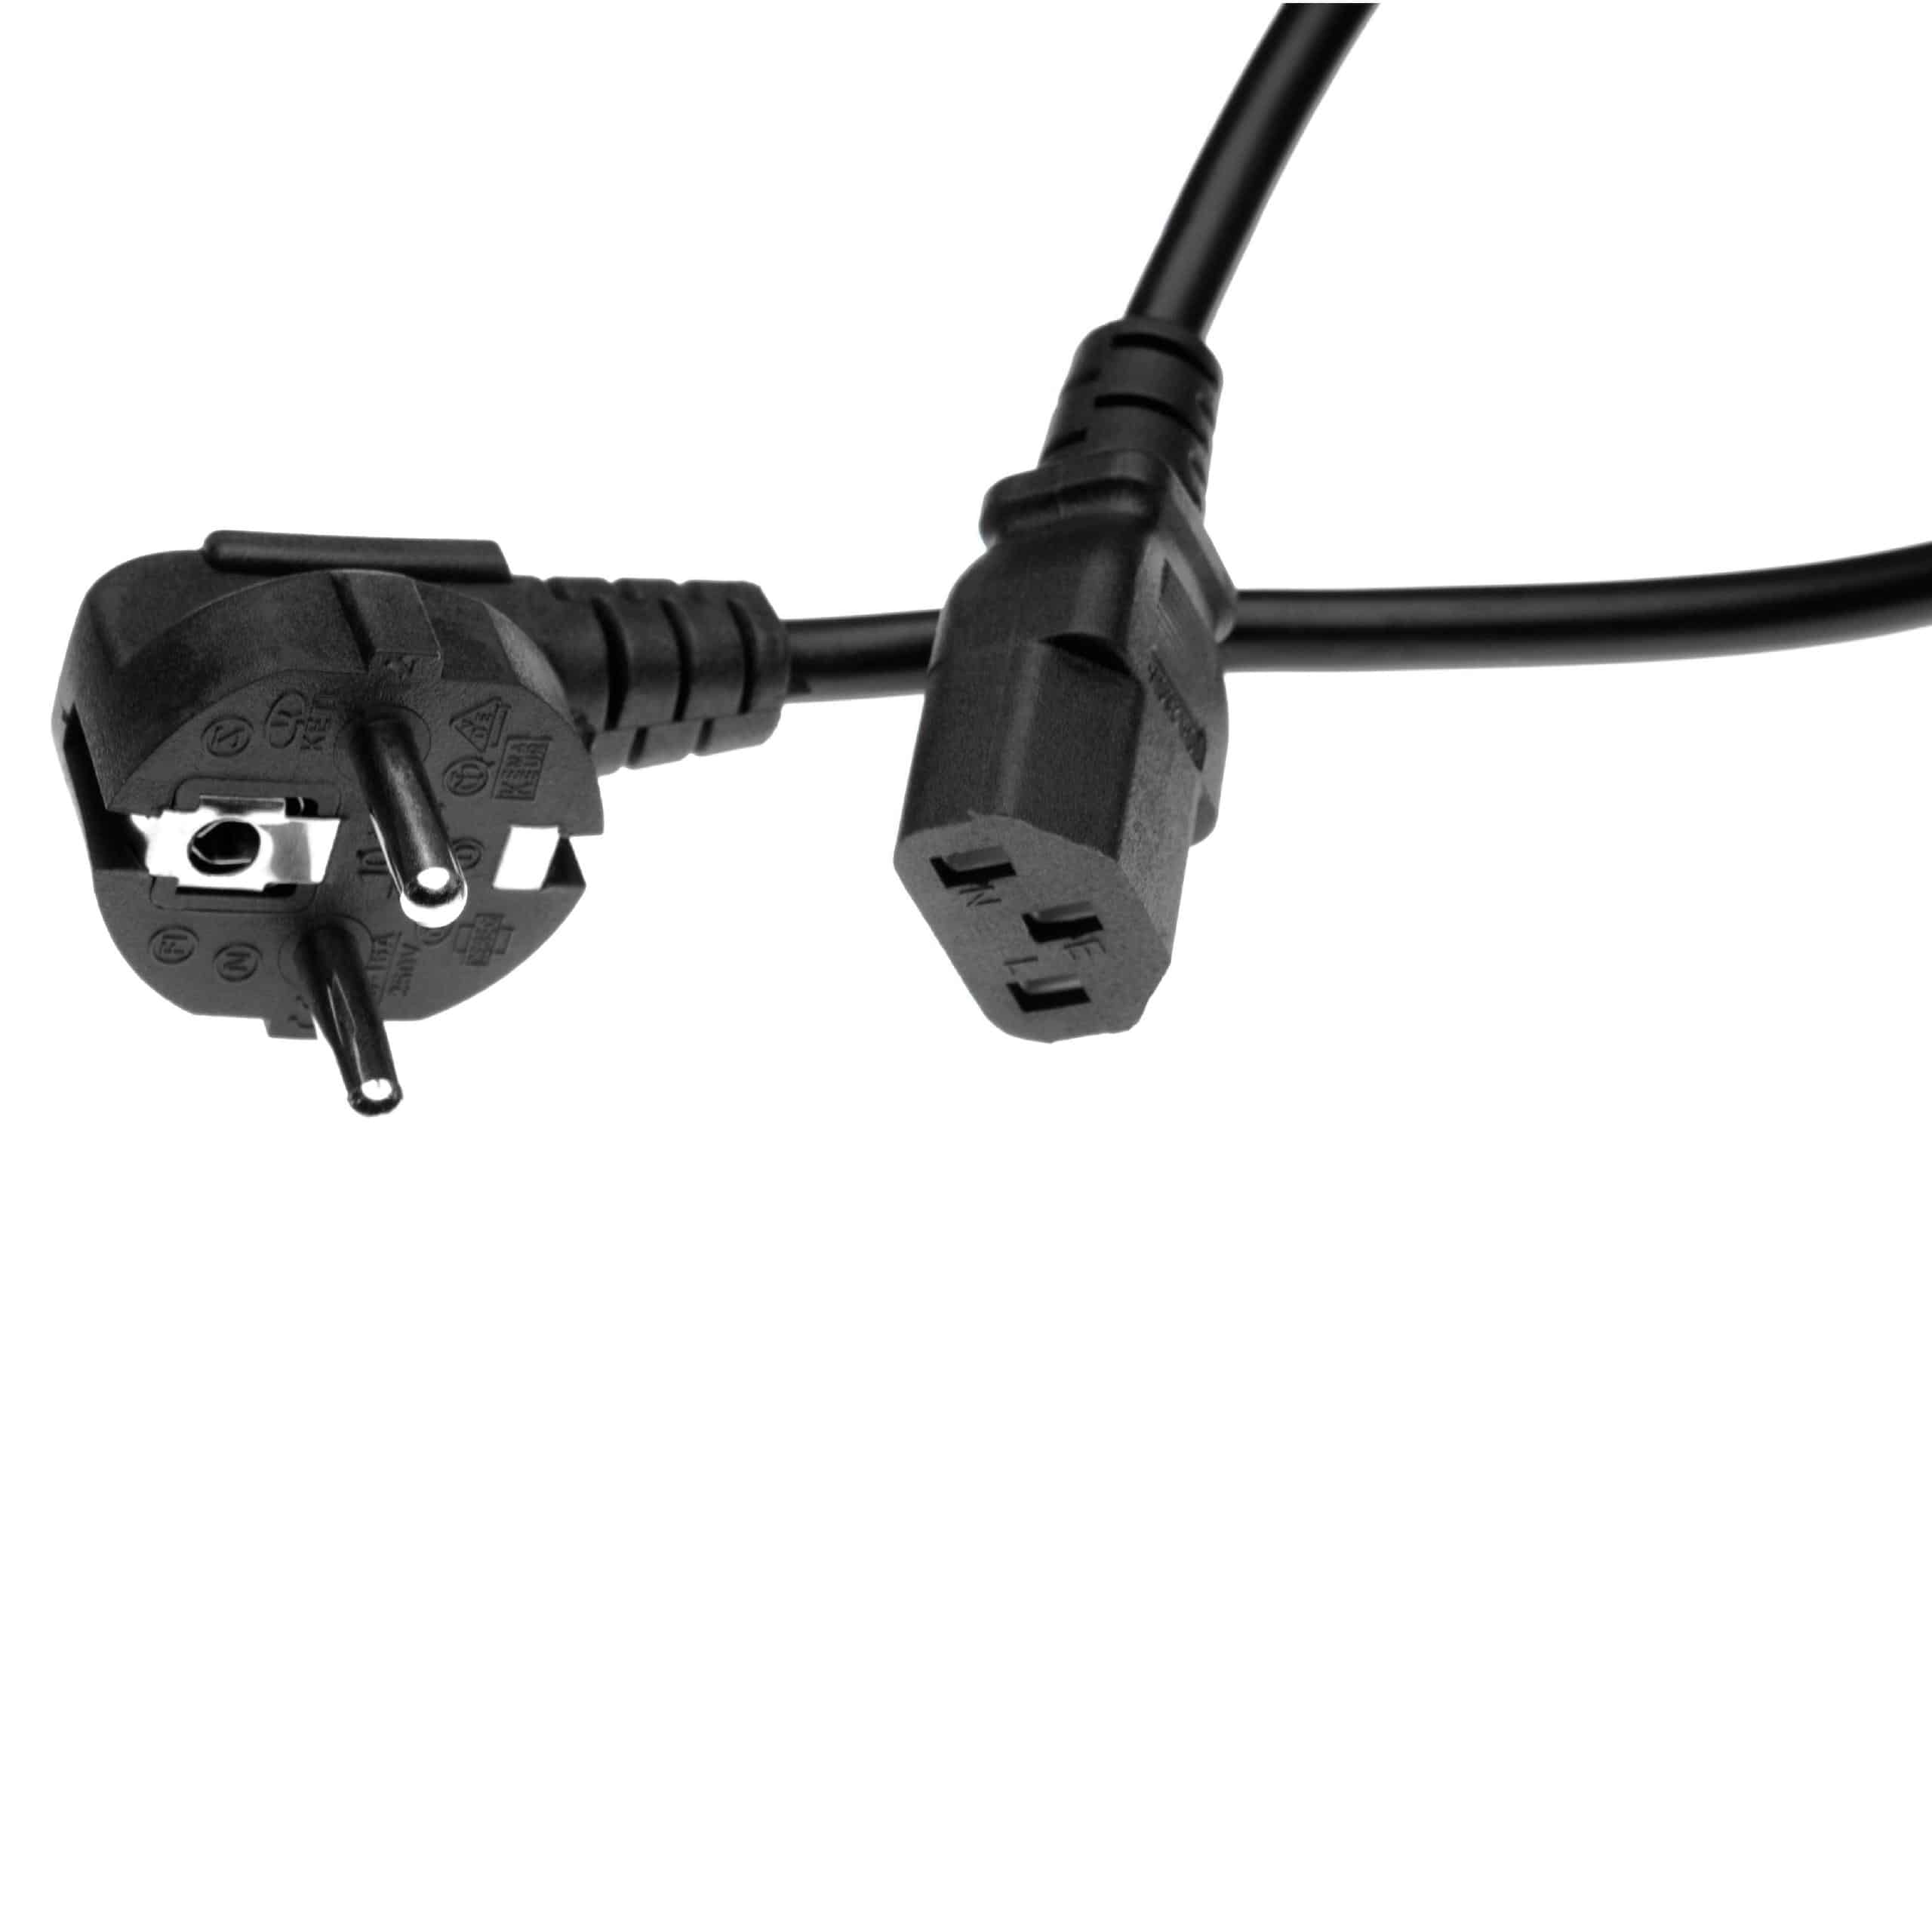 2x Cable de red C13 euroconector compatible con dispositivo IEC por ej. PC, monitor, ordenador - 1,2 m